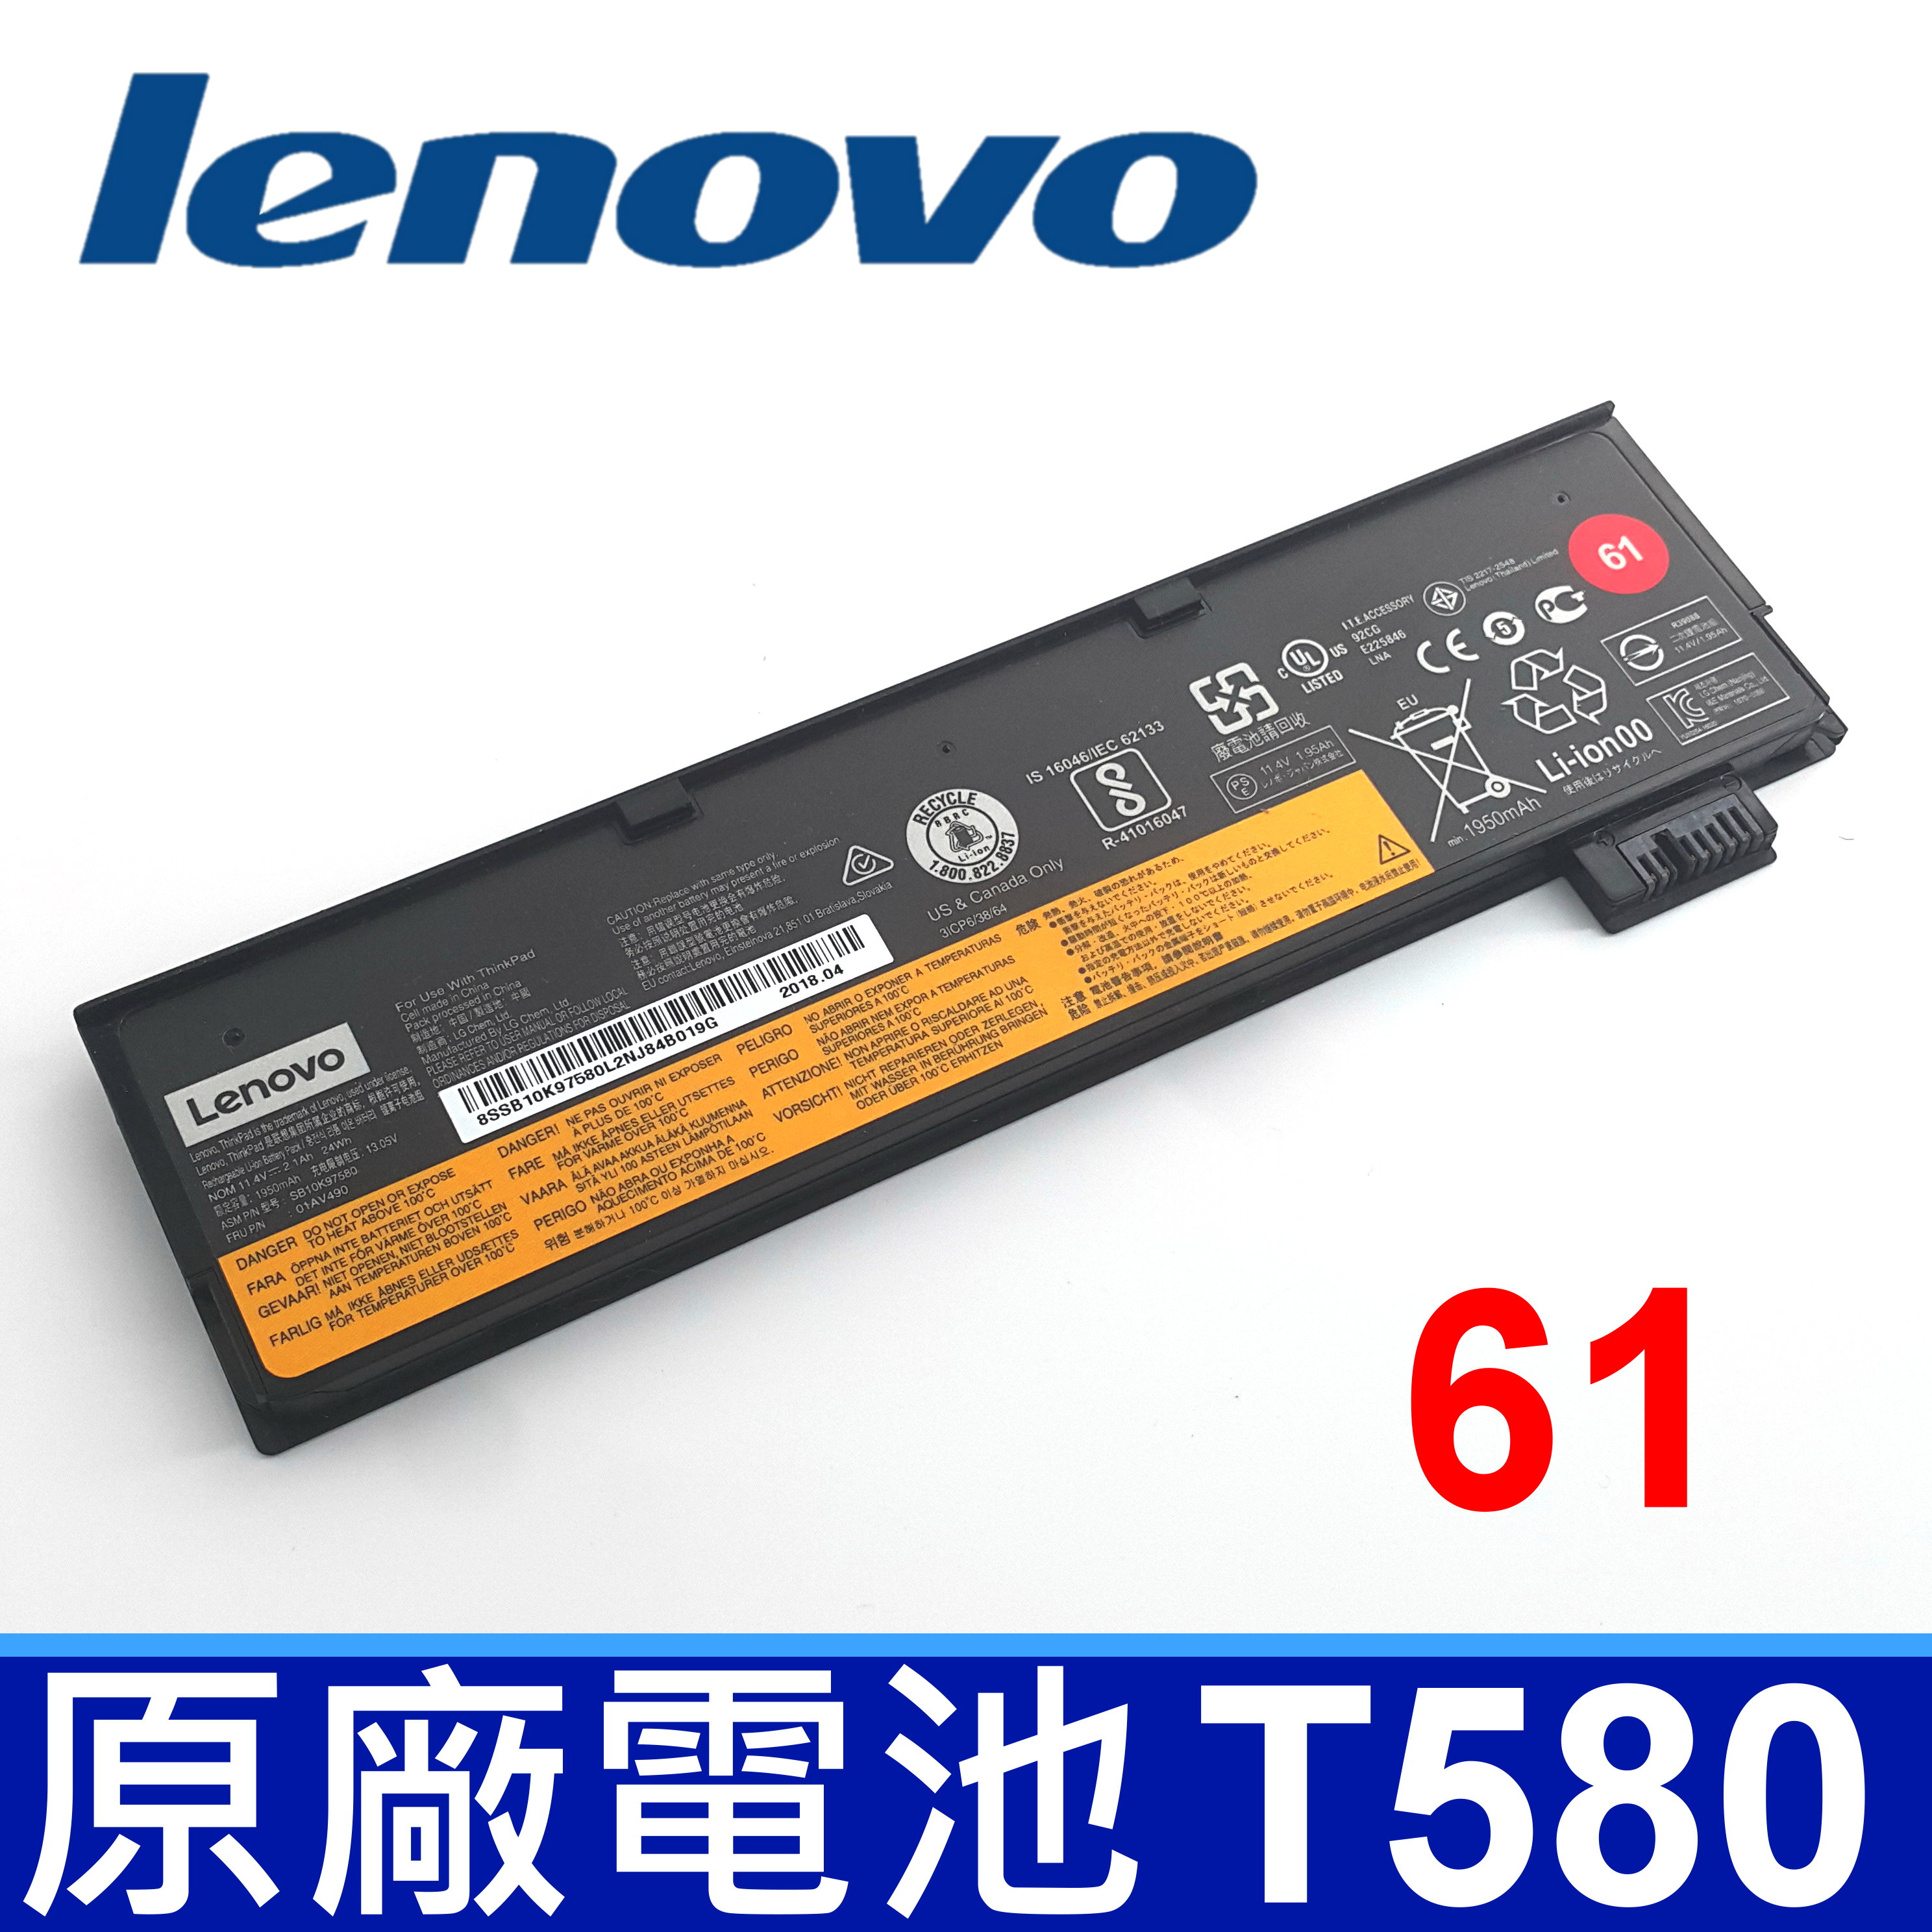 LENOVO T580 61 3芯 原廠電池 Thinkpad T470 T570 T480 P51S A475 01AV422 01AV423 01AV424 01AV425 01AV426 01AV427 01AV428 4X50M08811